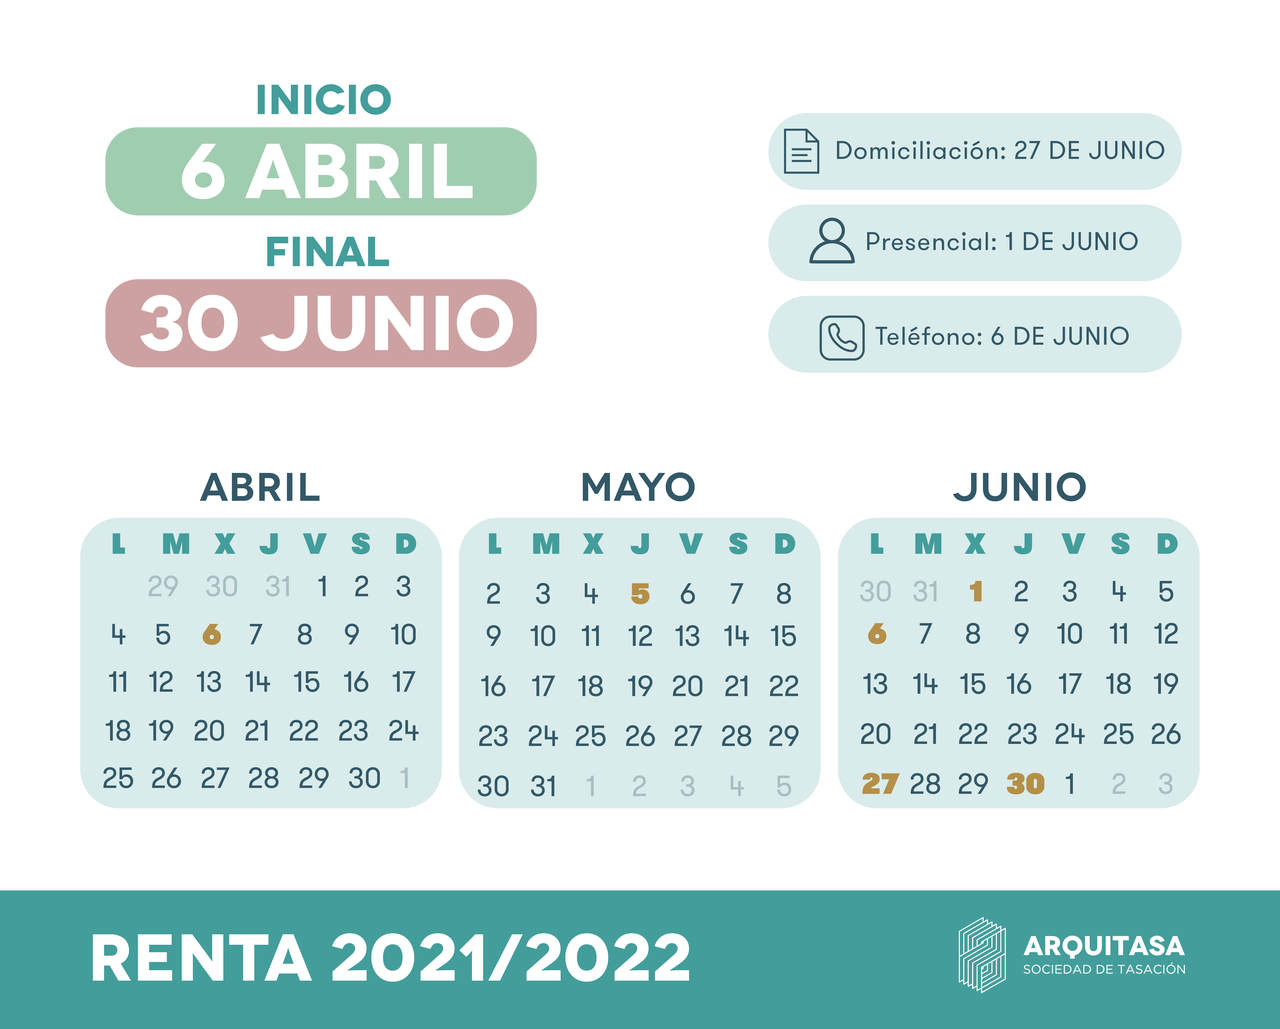 La campaña de la declaración de la renta de 2022 comienza el día 6 de abril y finaliza el día 30 de junio